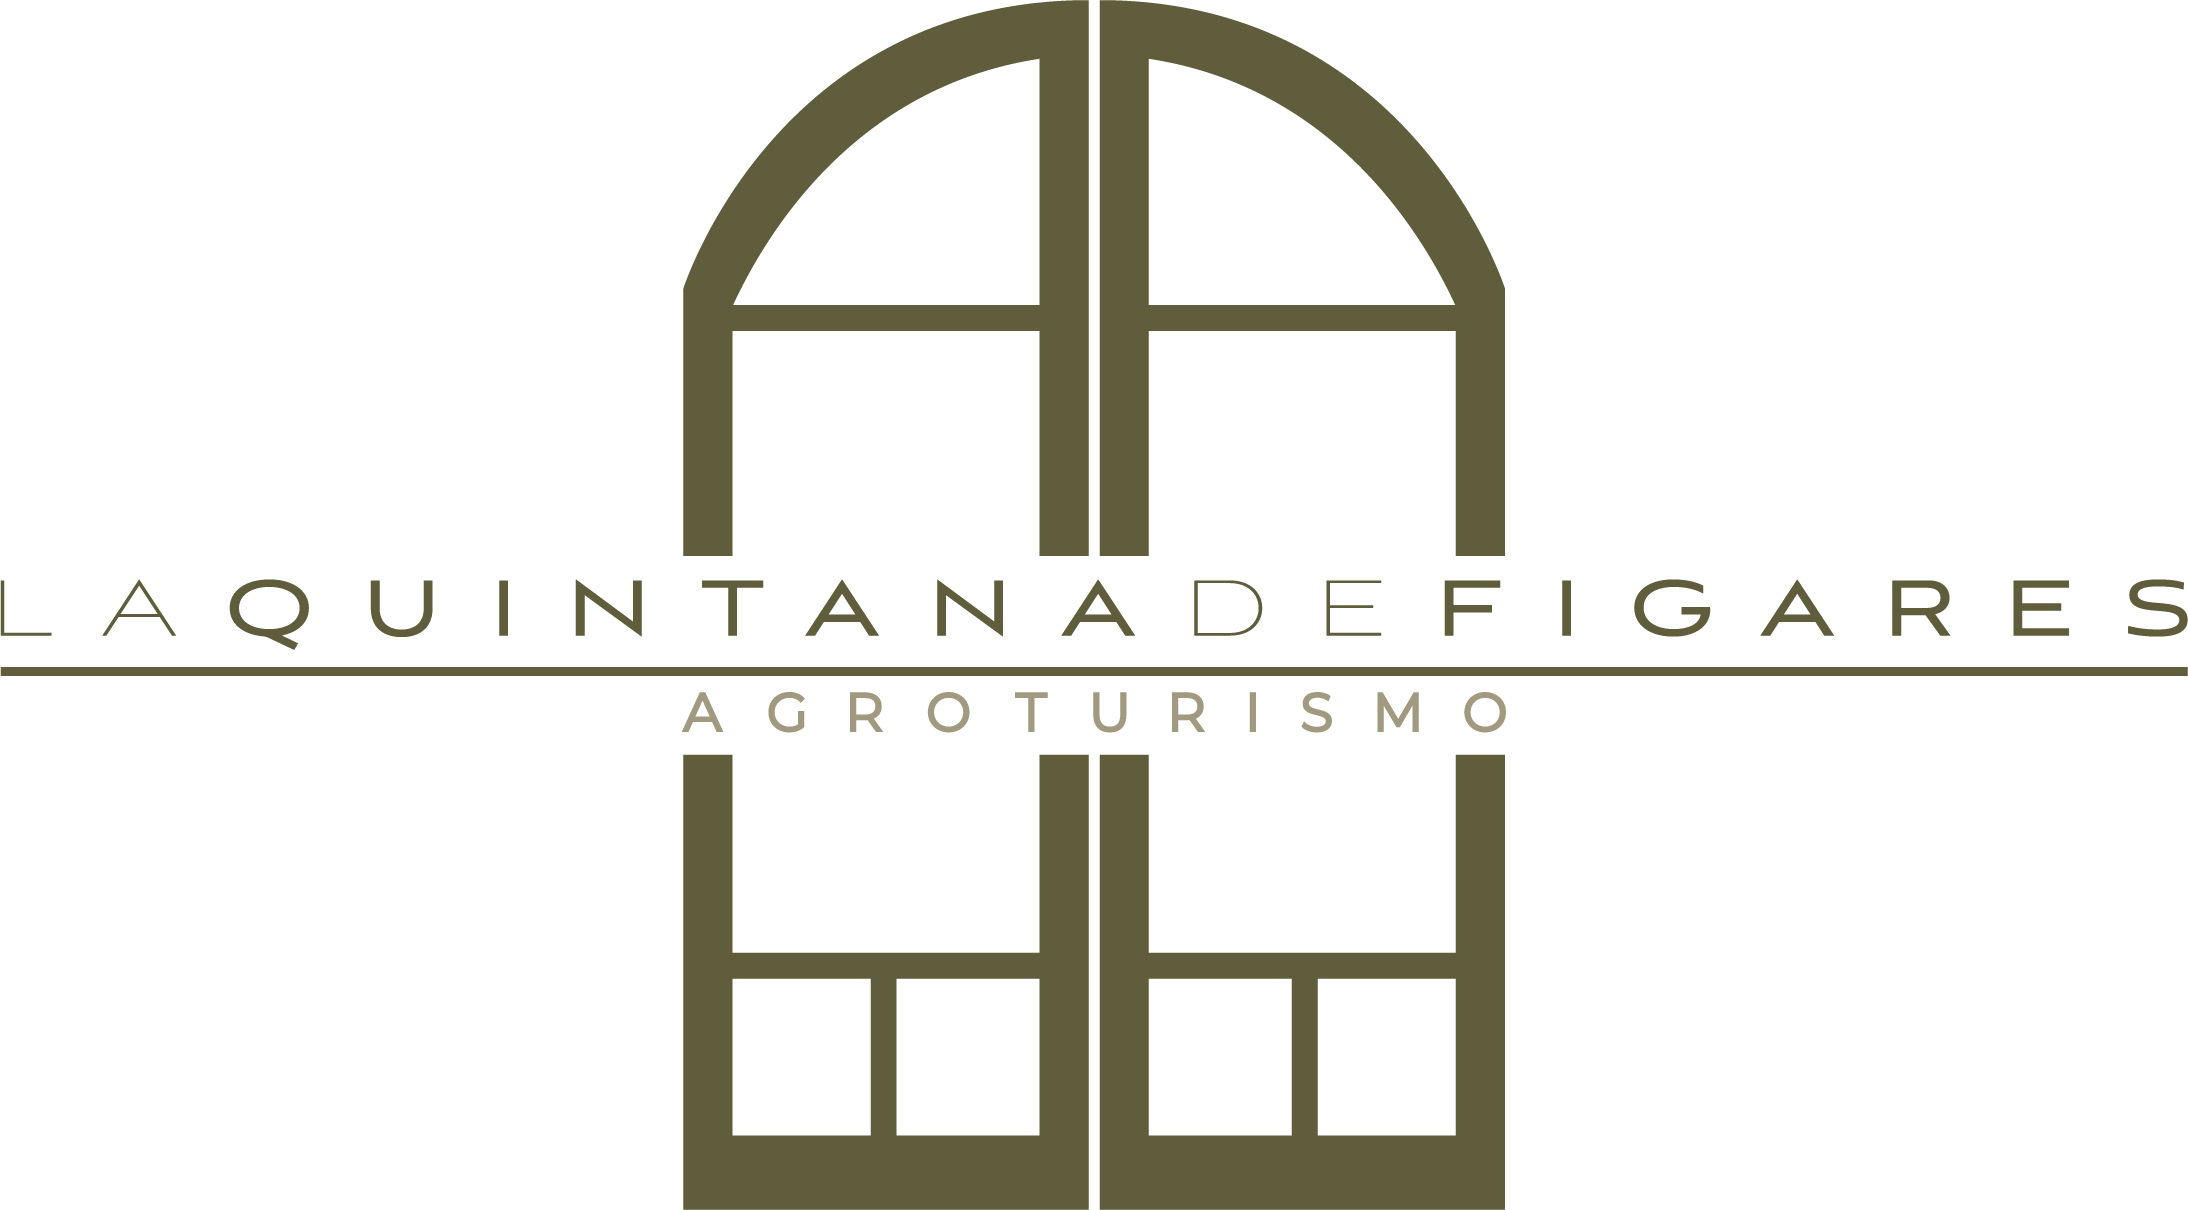 La Quintana de Figares